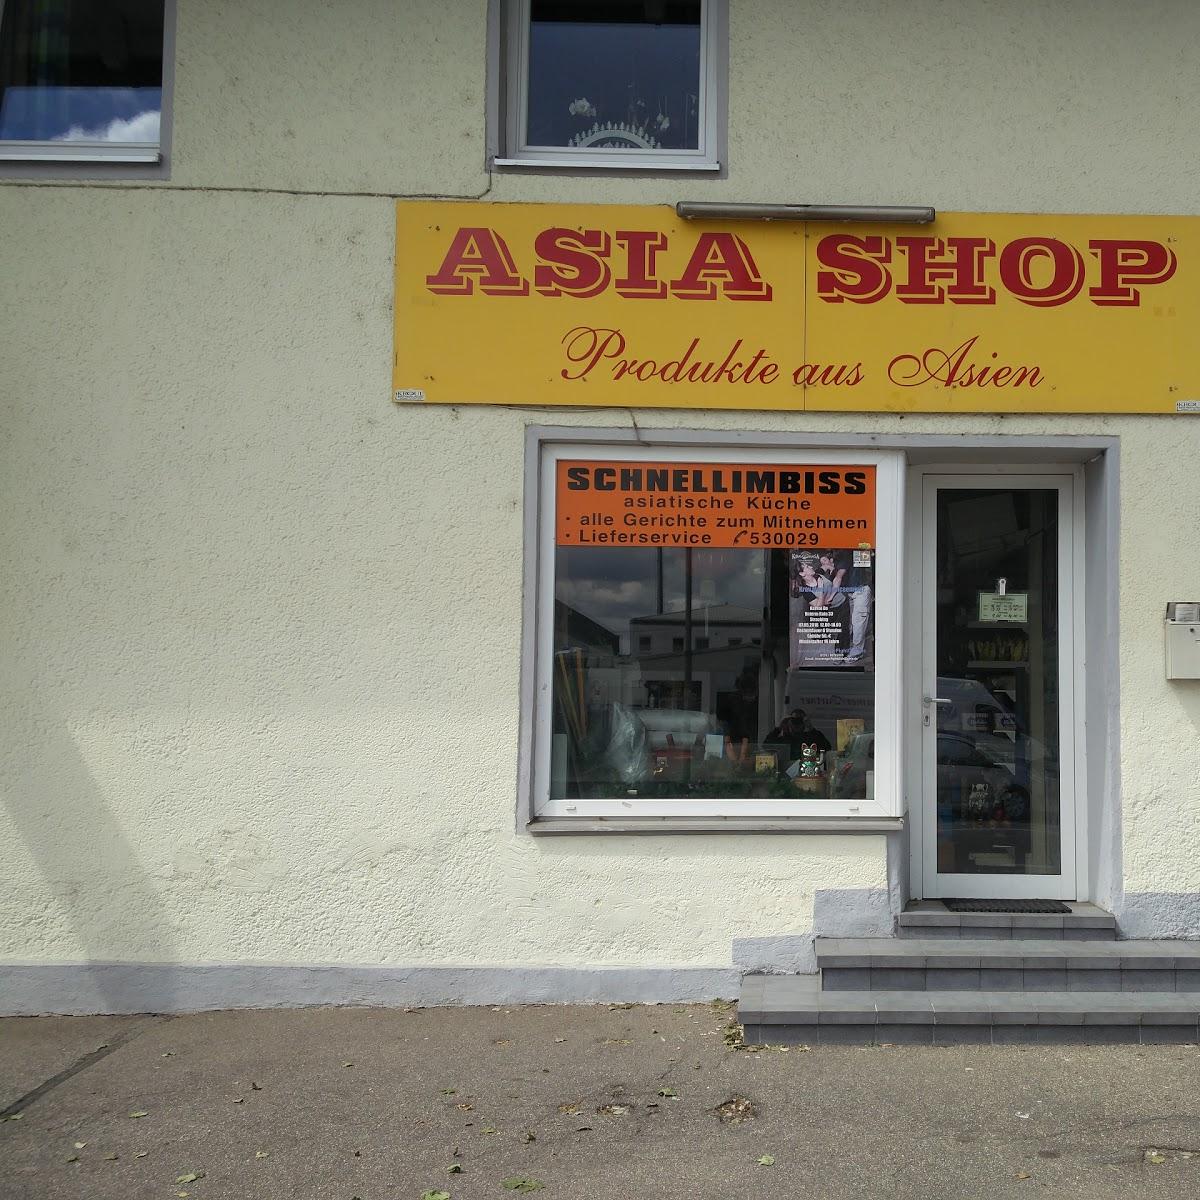 Restaurant "Asia Shop" in Straubing